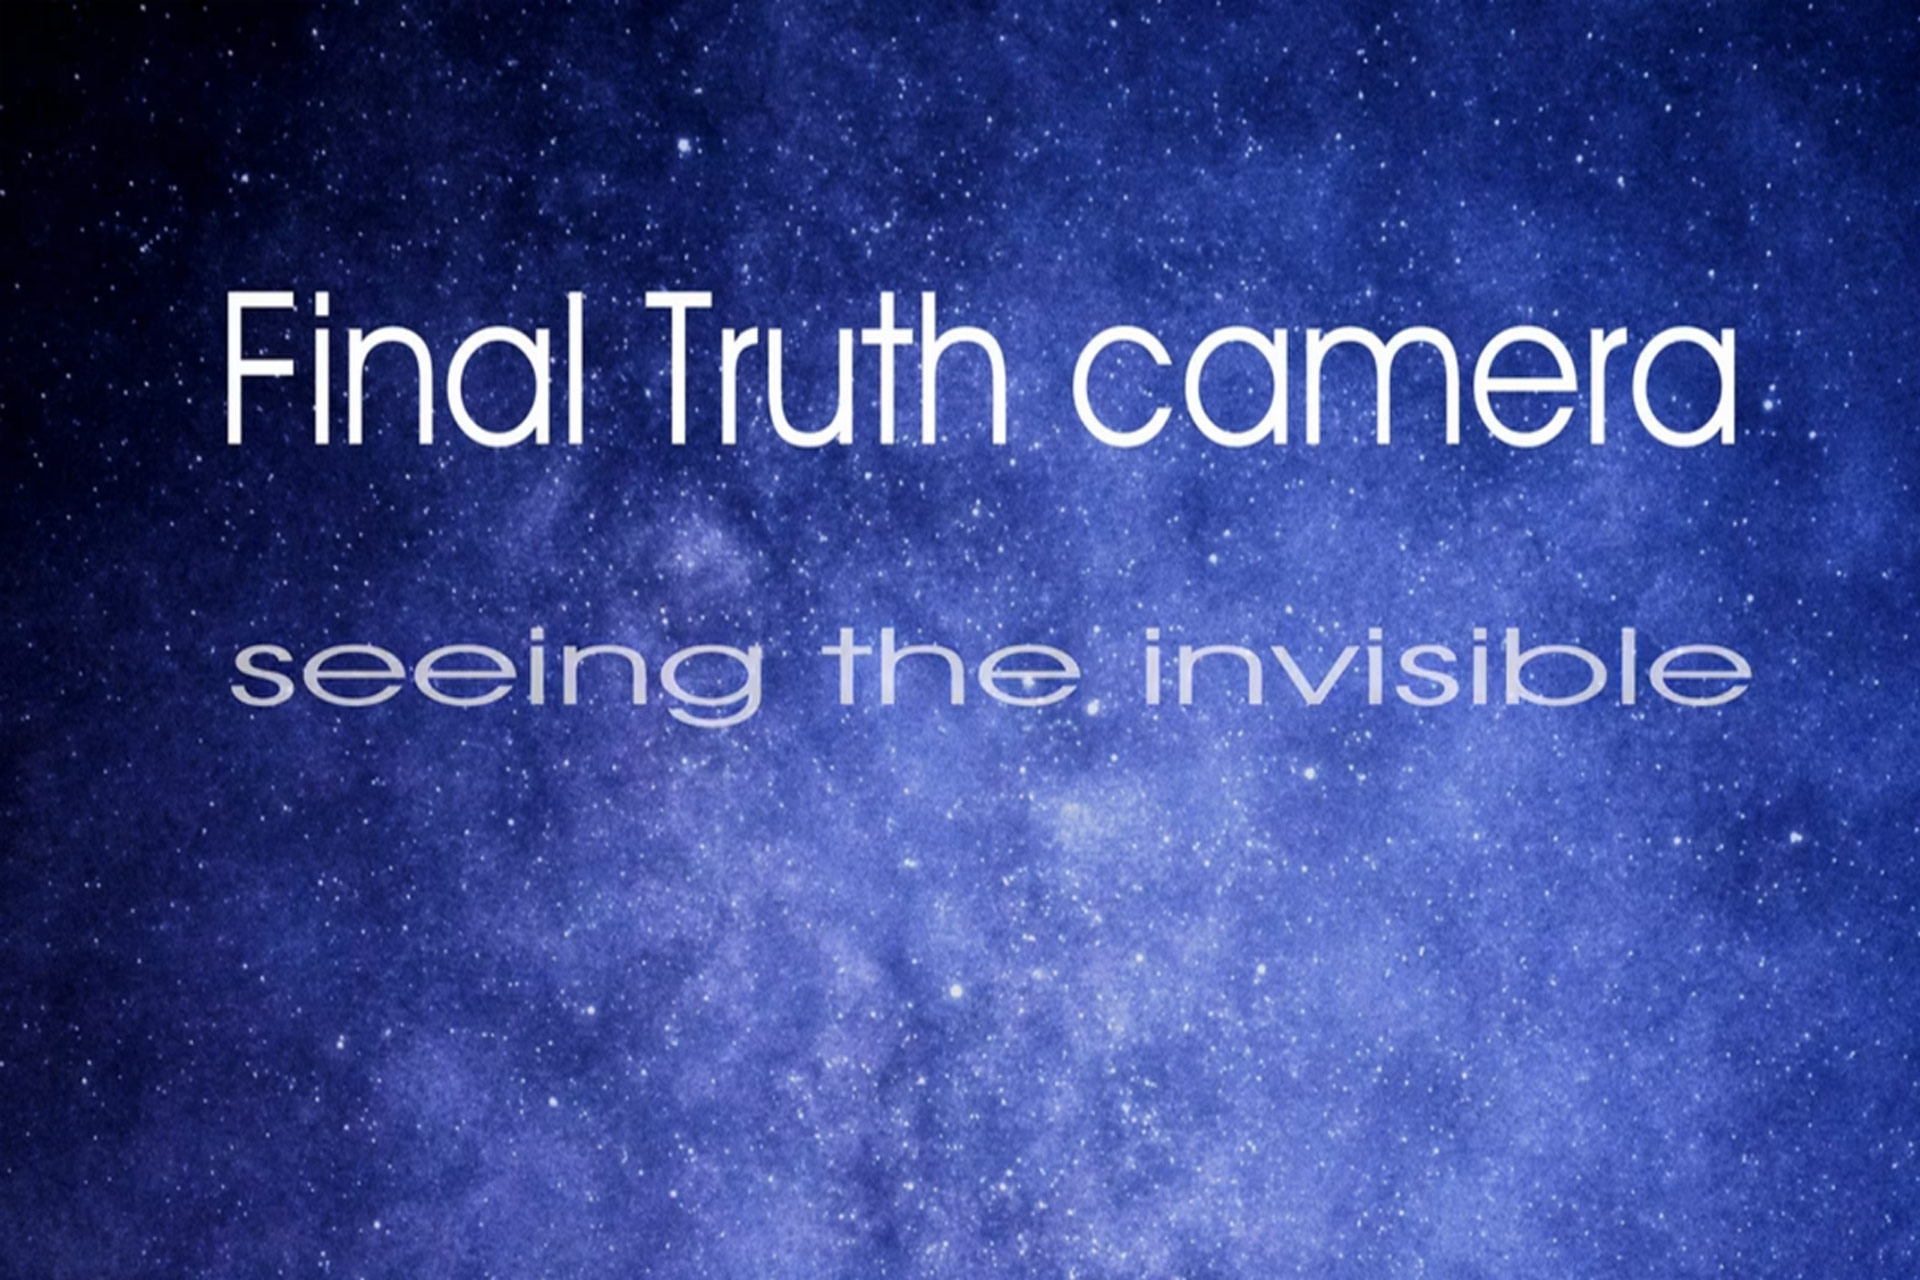 Final Truth Camera